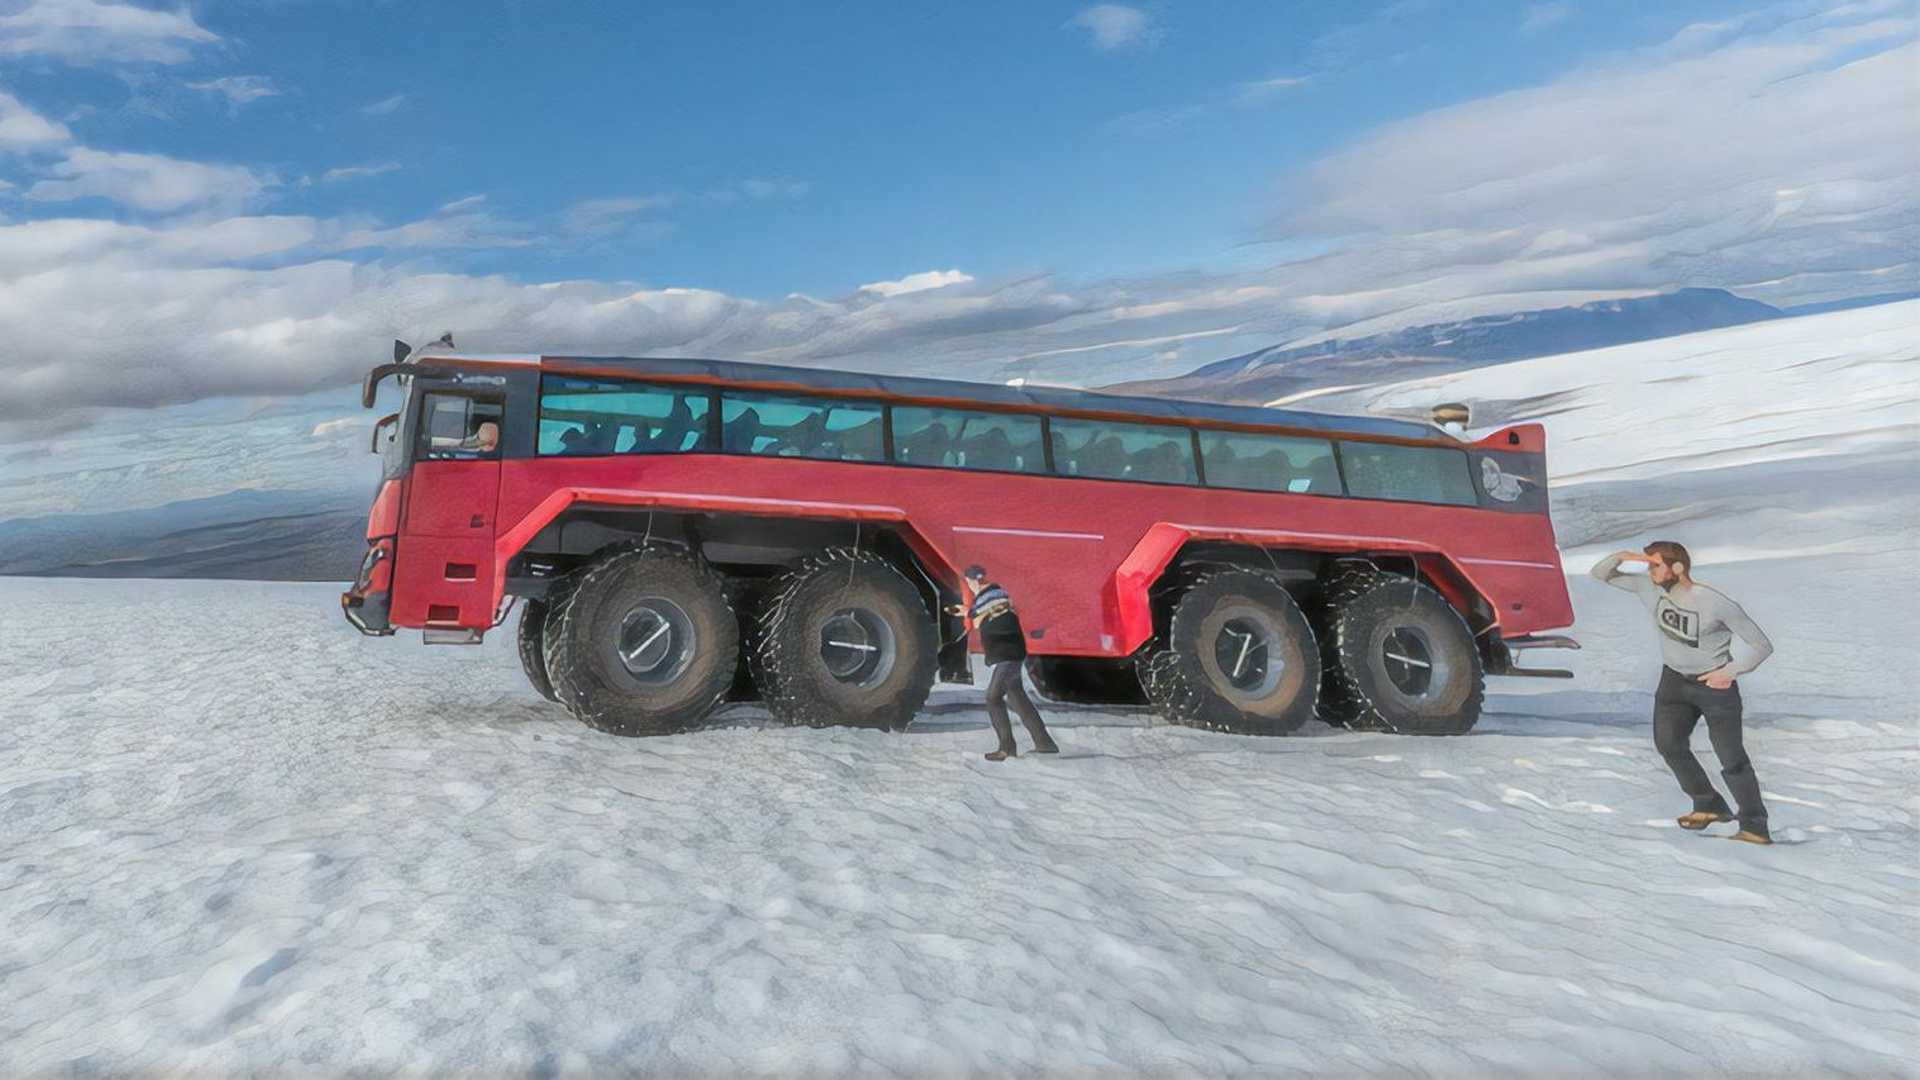 Sleipnir - autobus pro cestování po islandských ledovcíchSleipnir - autobus pro cestování po islandských ledovcích